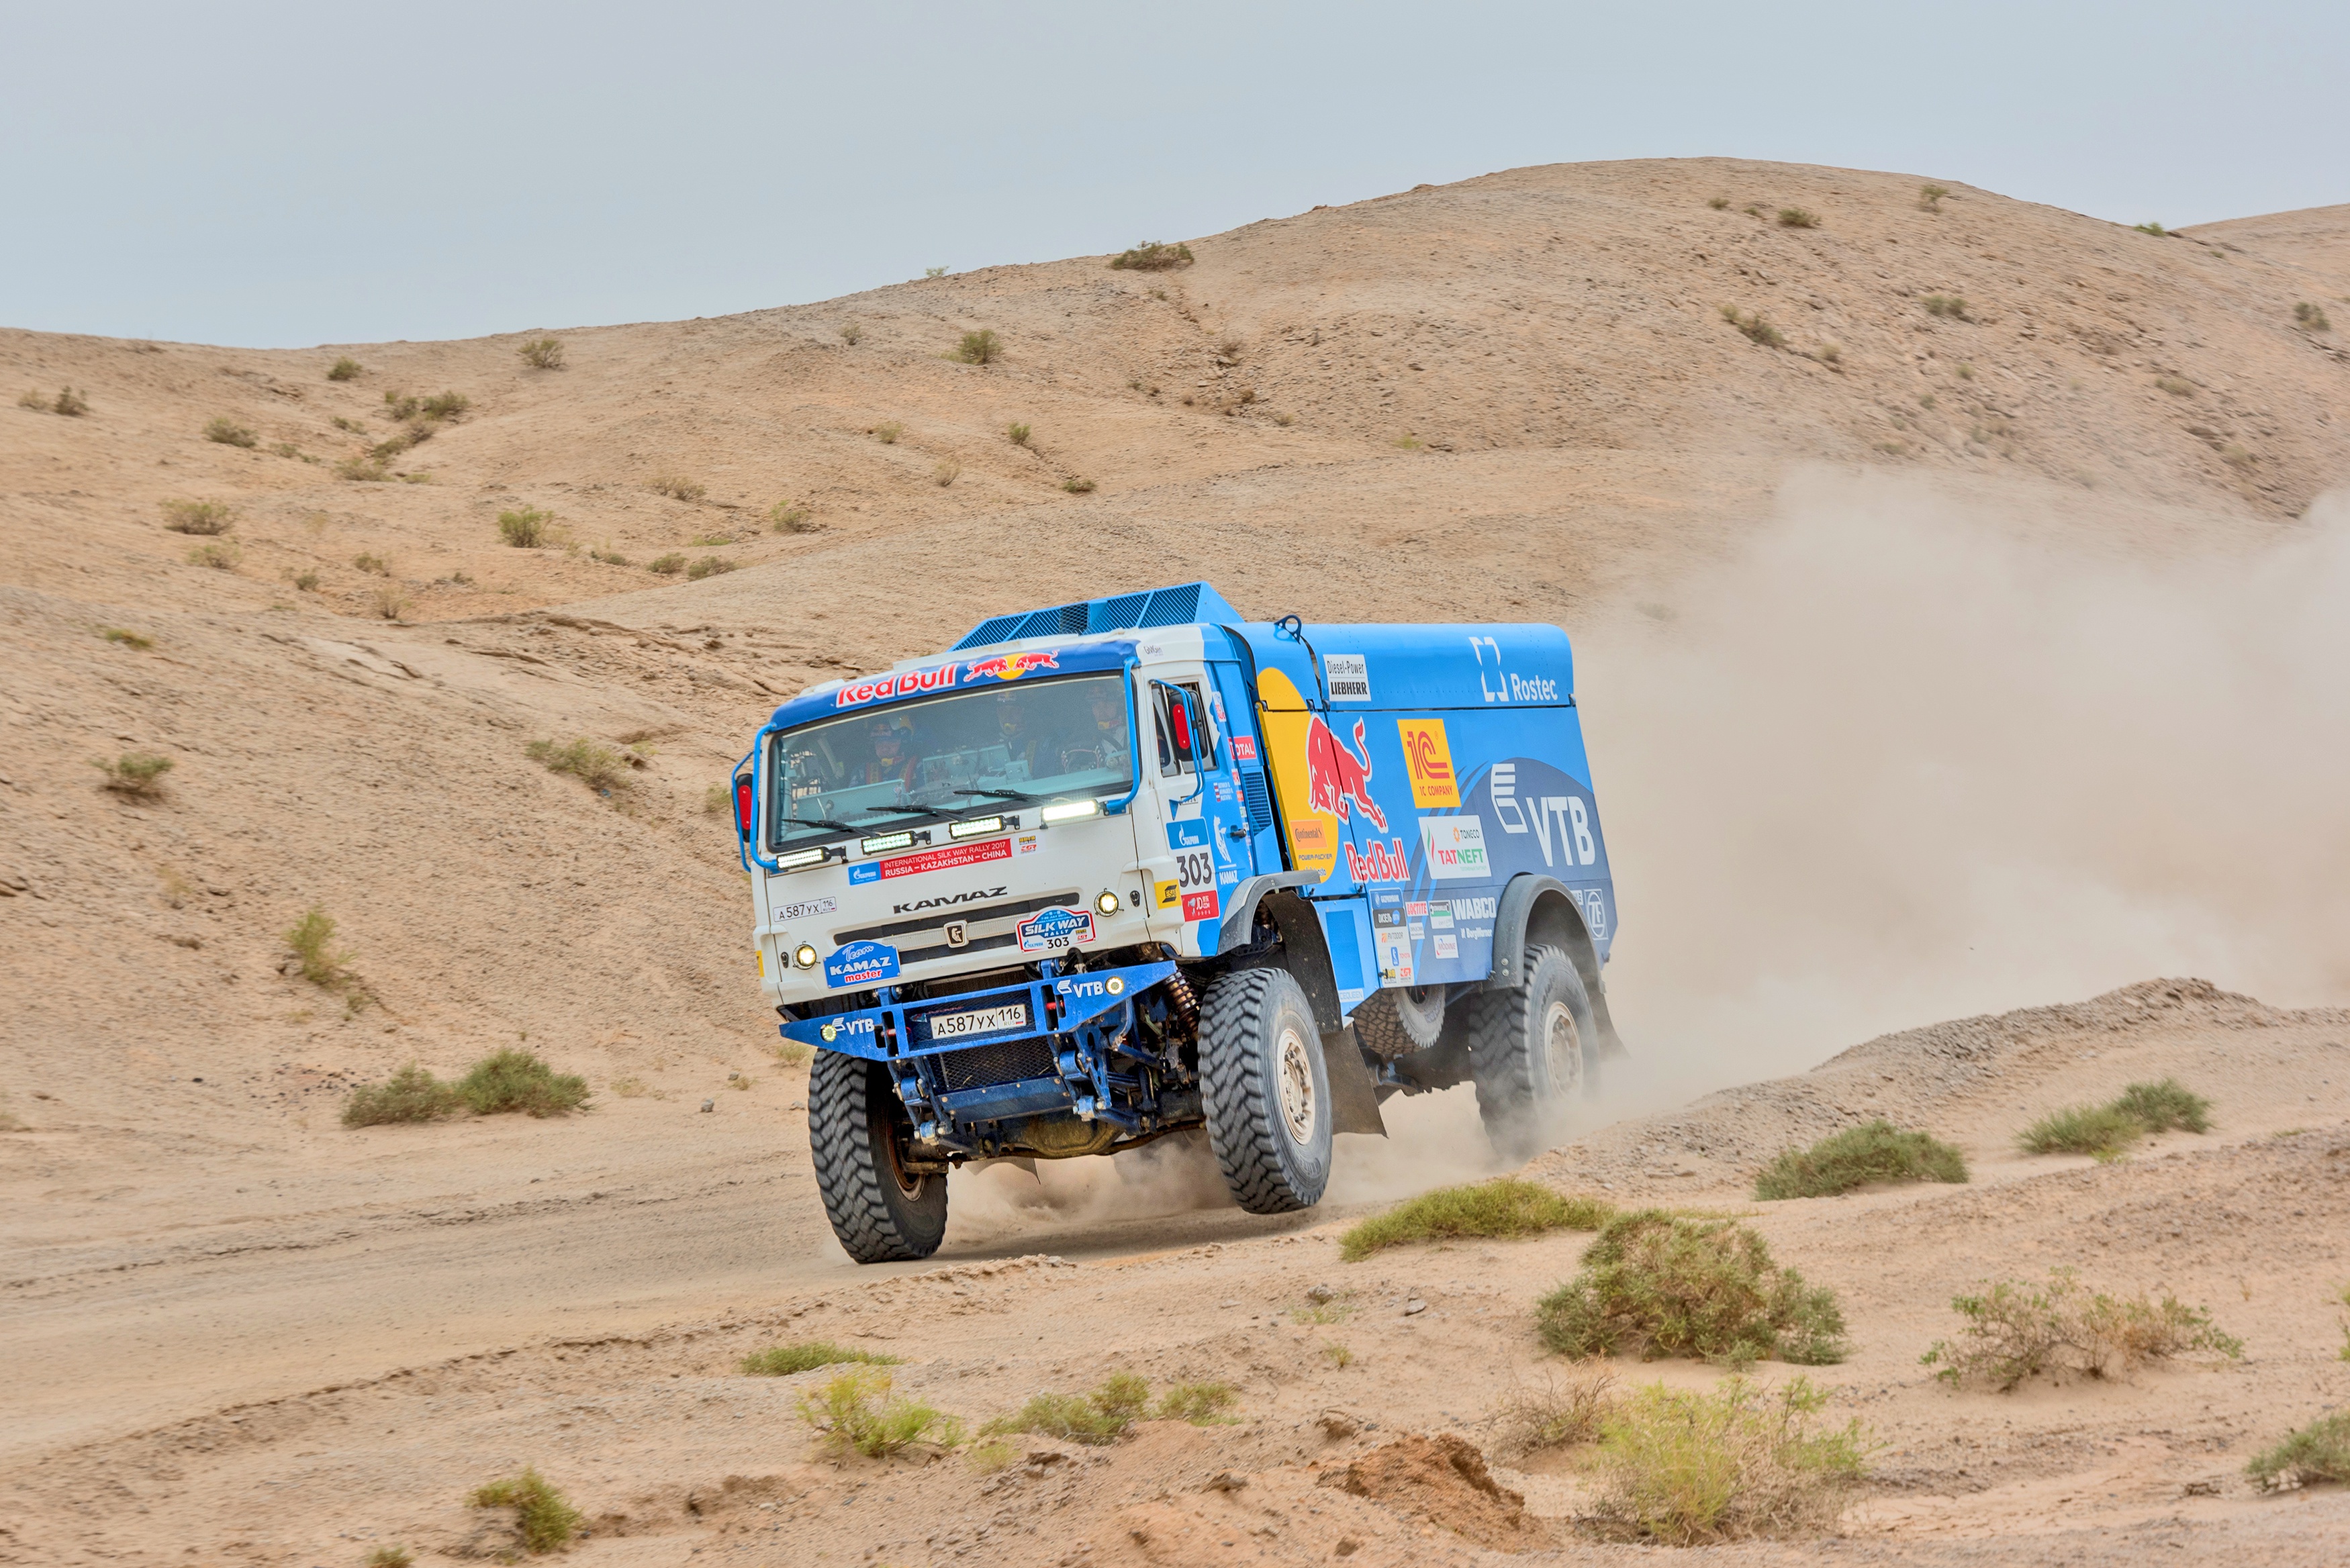 Desert Kamaz Rallying Red Bull Sand Truck Vehicle 3500x2336